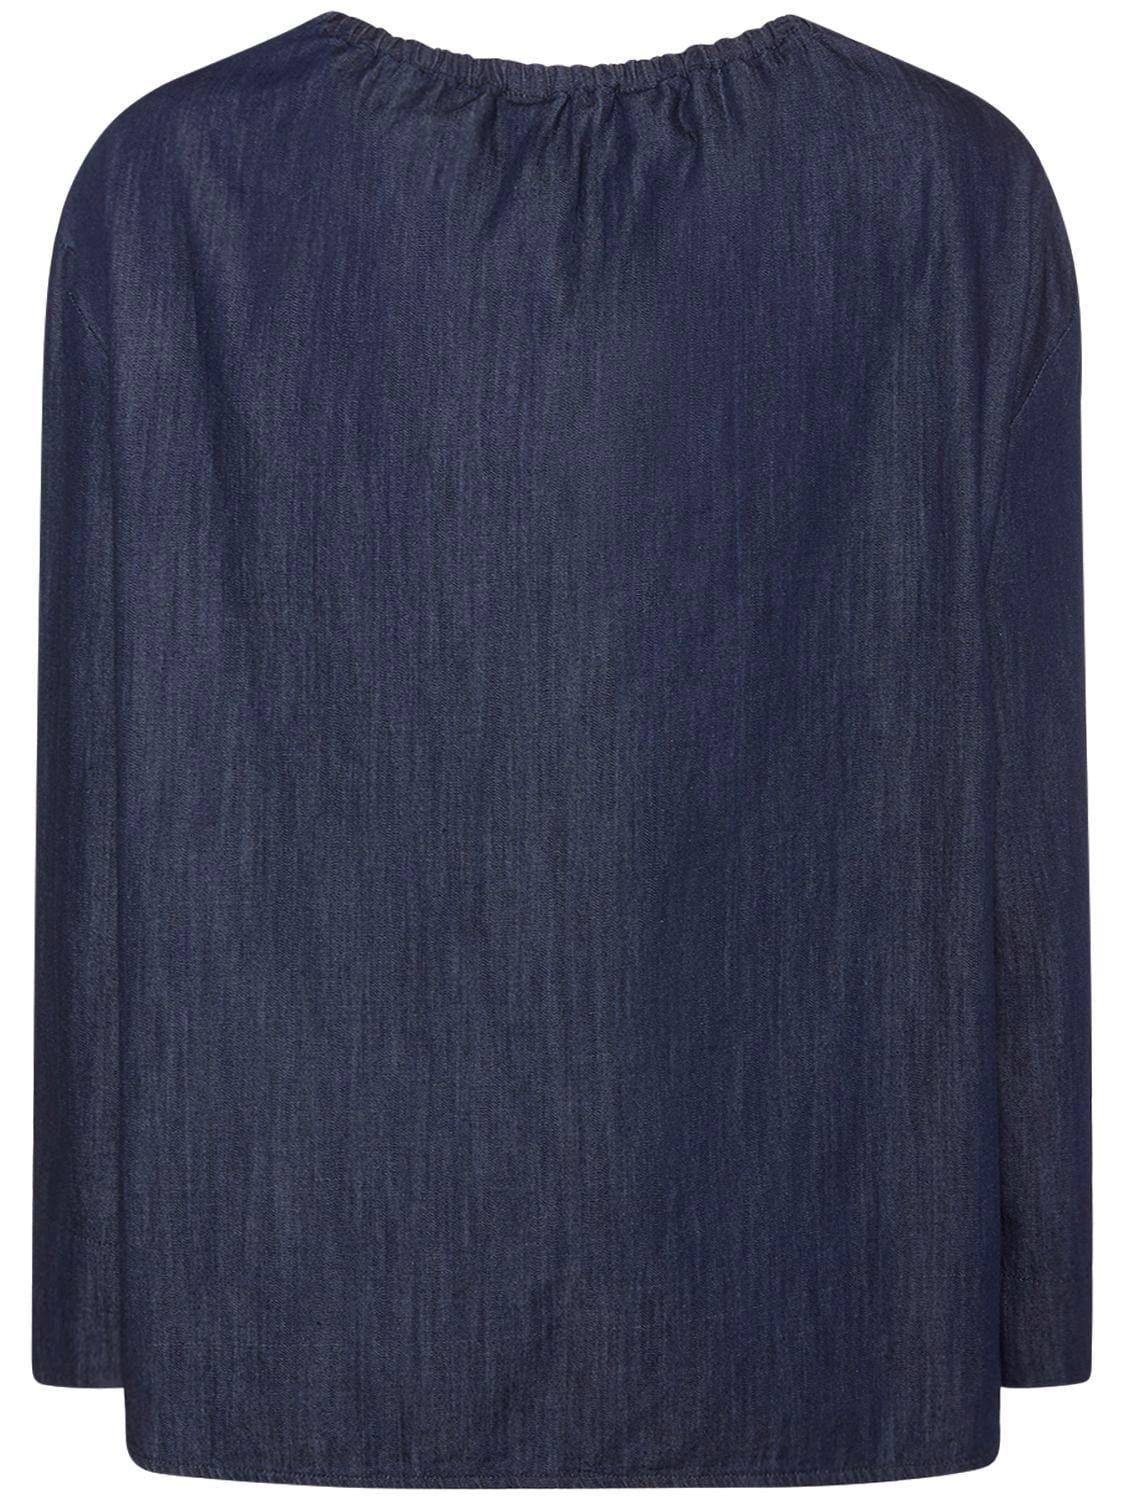 Max Mara Bijoux Cotton Denim Top in Blue | Lyst